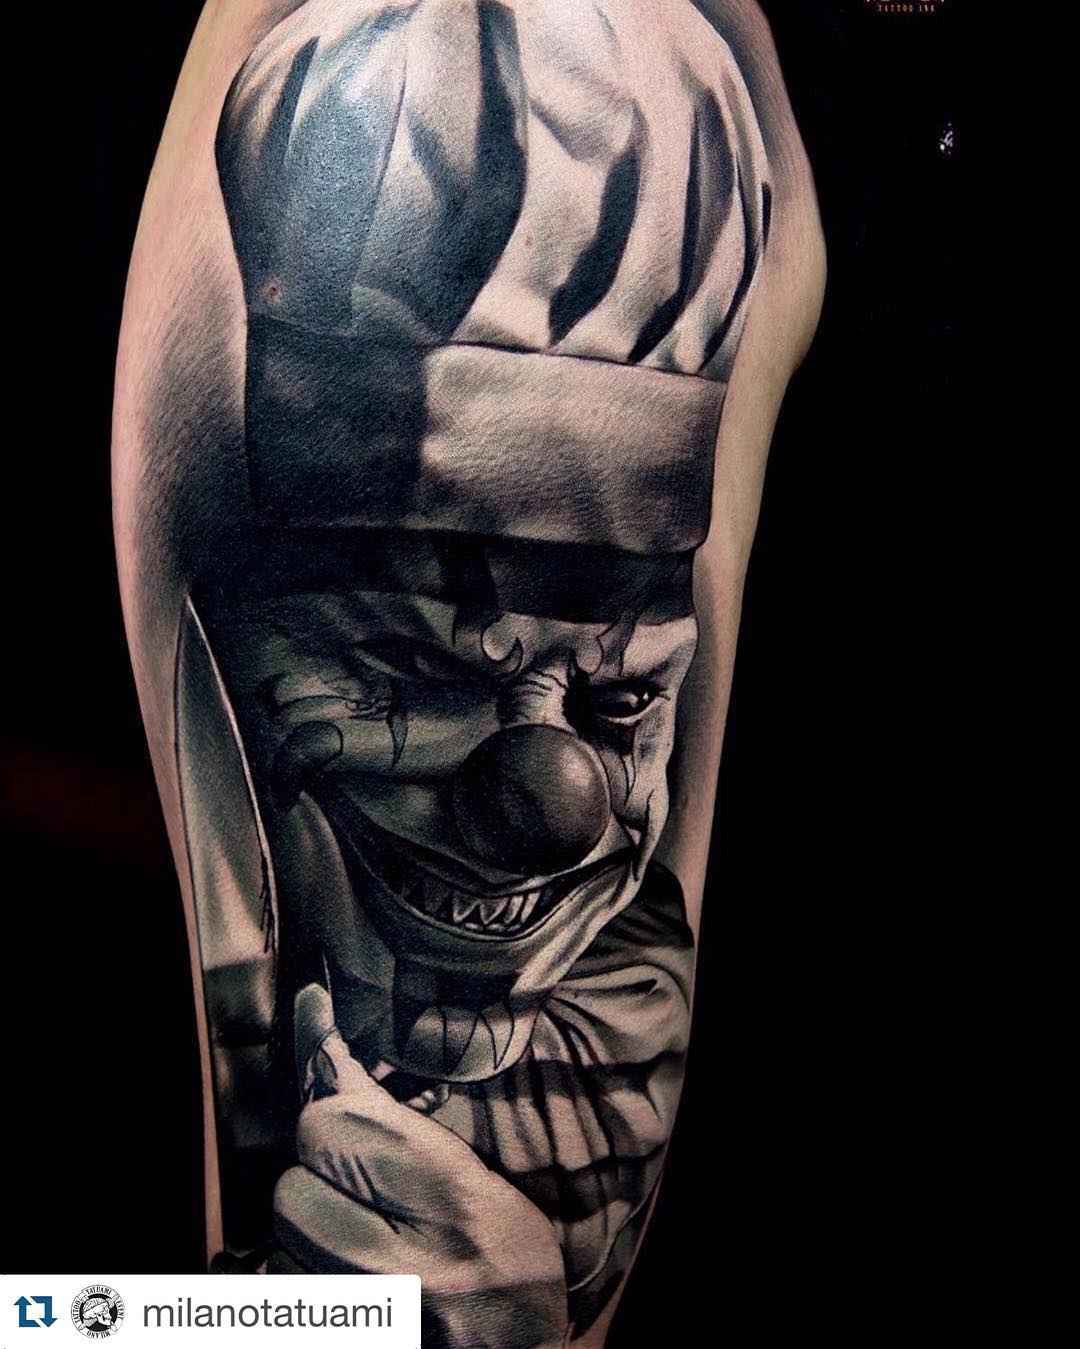 Killer Ink Tattoo presents: Damian Gorski - Tattoo Spirit